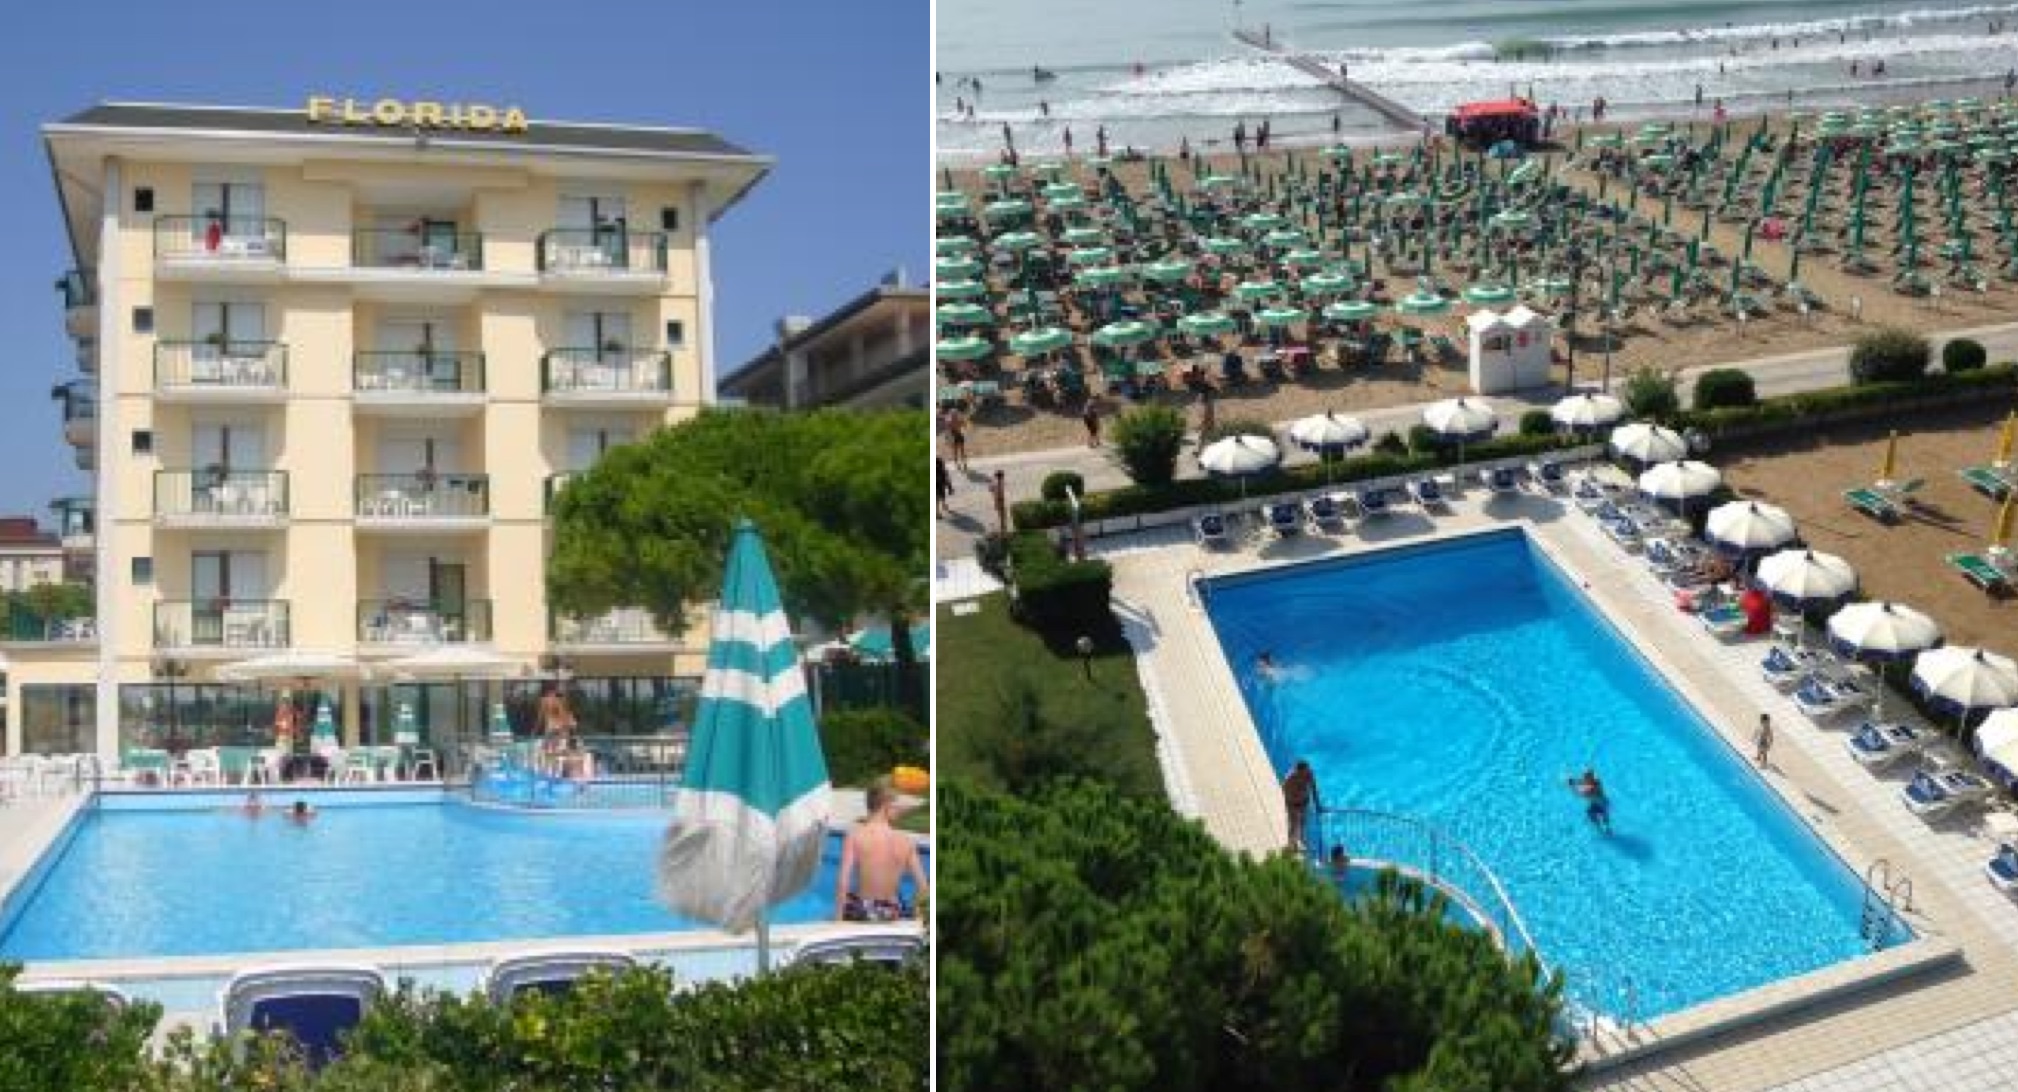 Izq: El Hotel Florida hoy. Der: La piscina queda muy cerca del mar. (Fotos: hotelfloridajesolo.it)